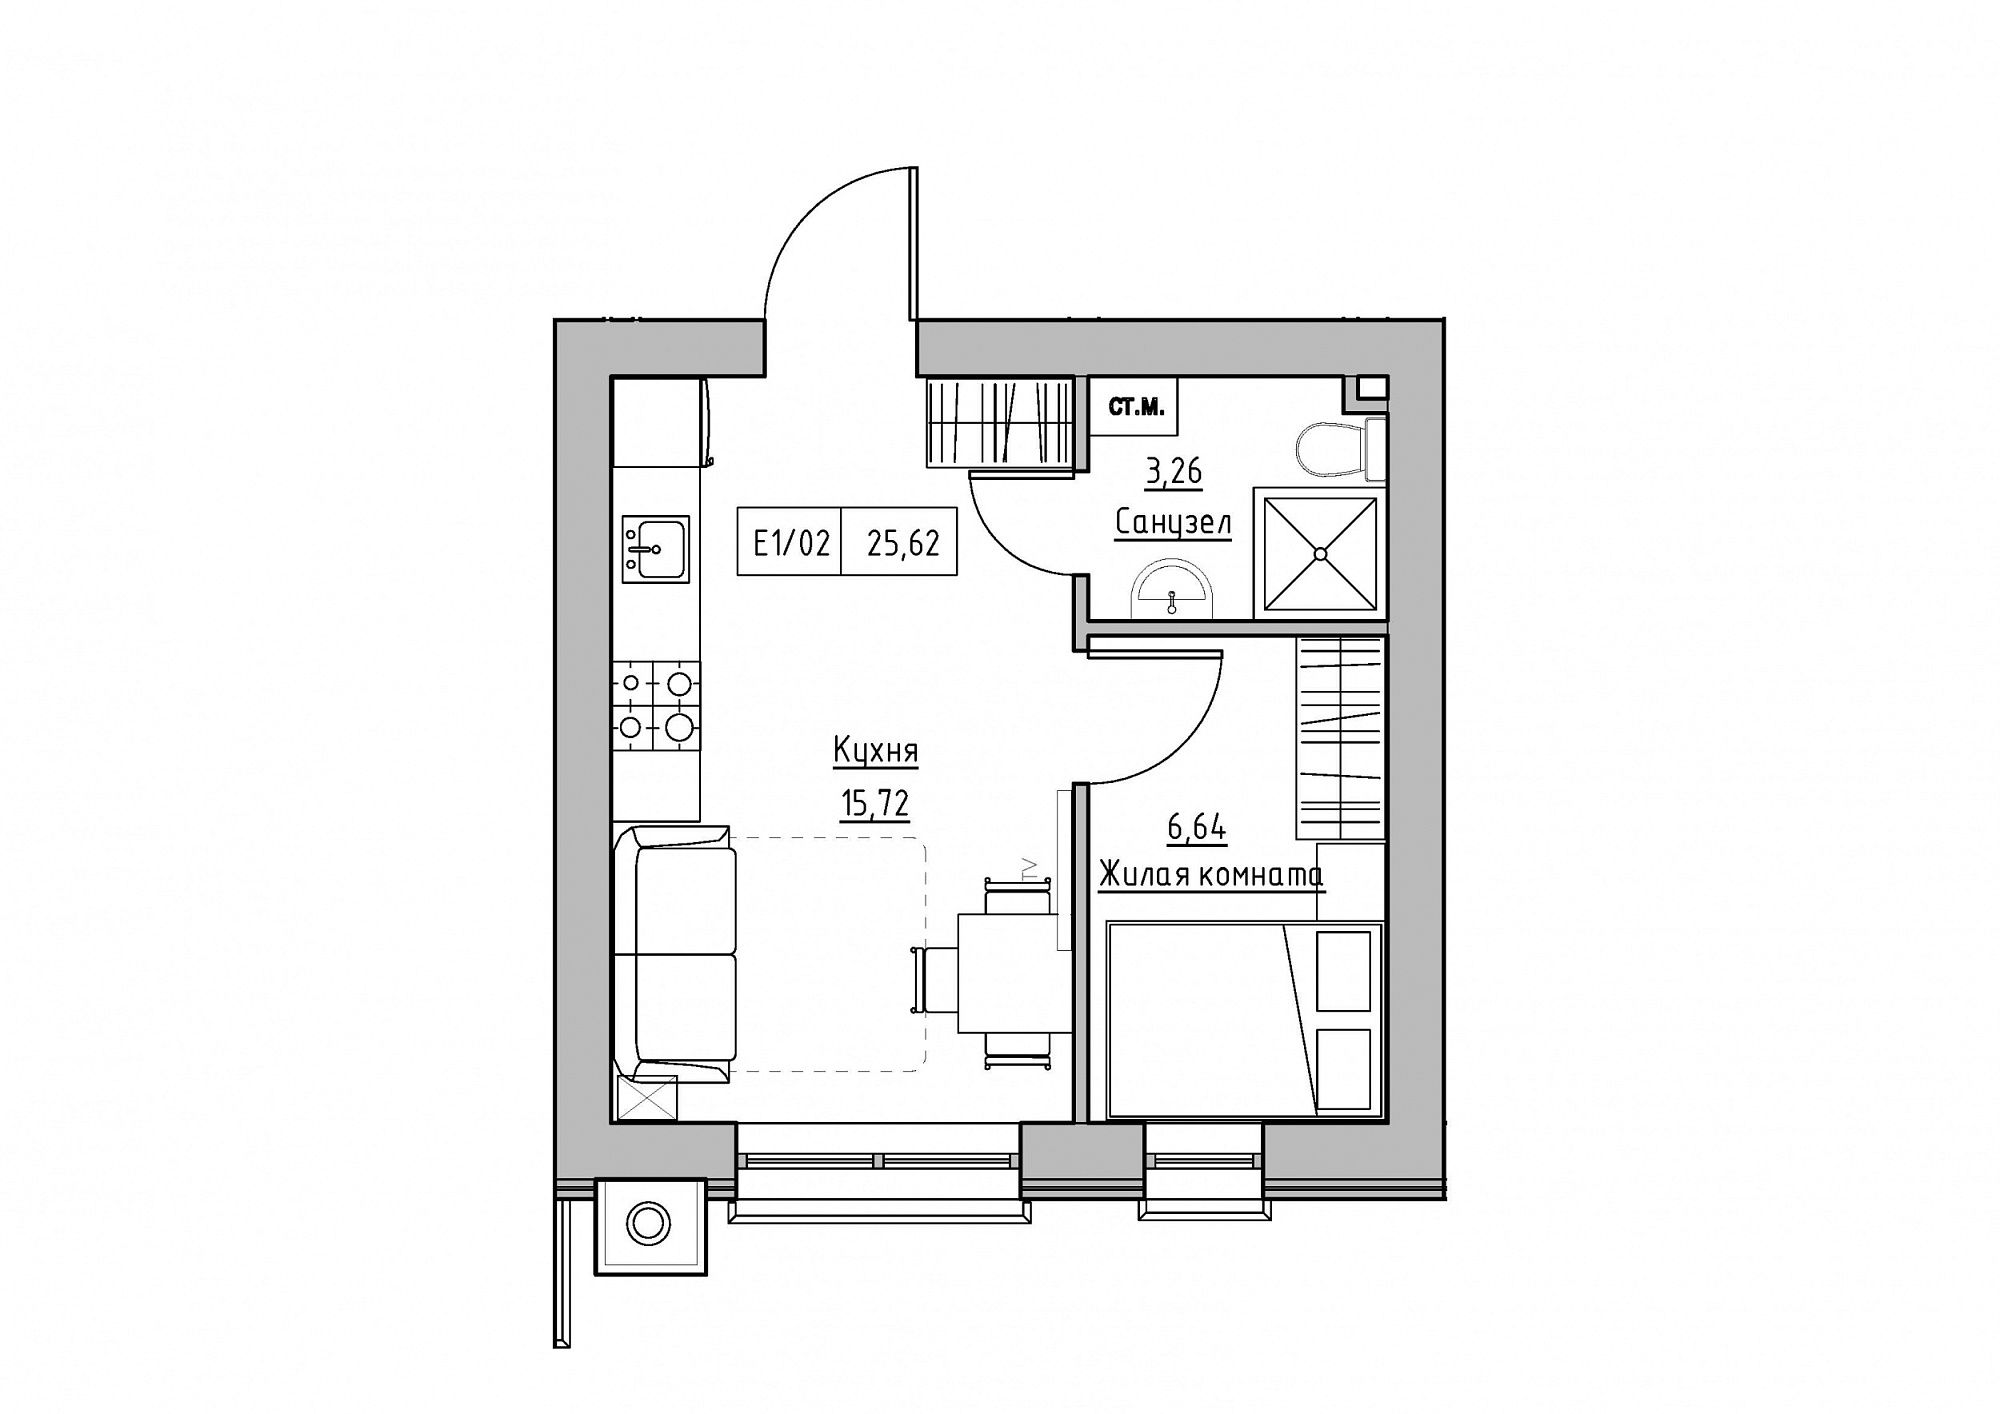 Планировка 1-к квартира площей 25.62м2, KS-012-05/0004.